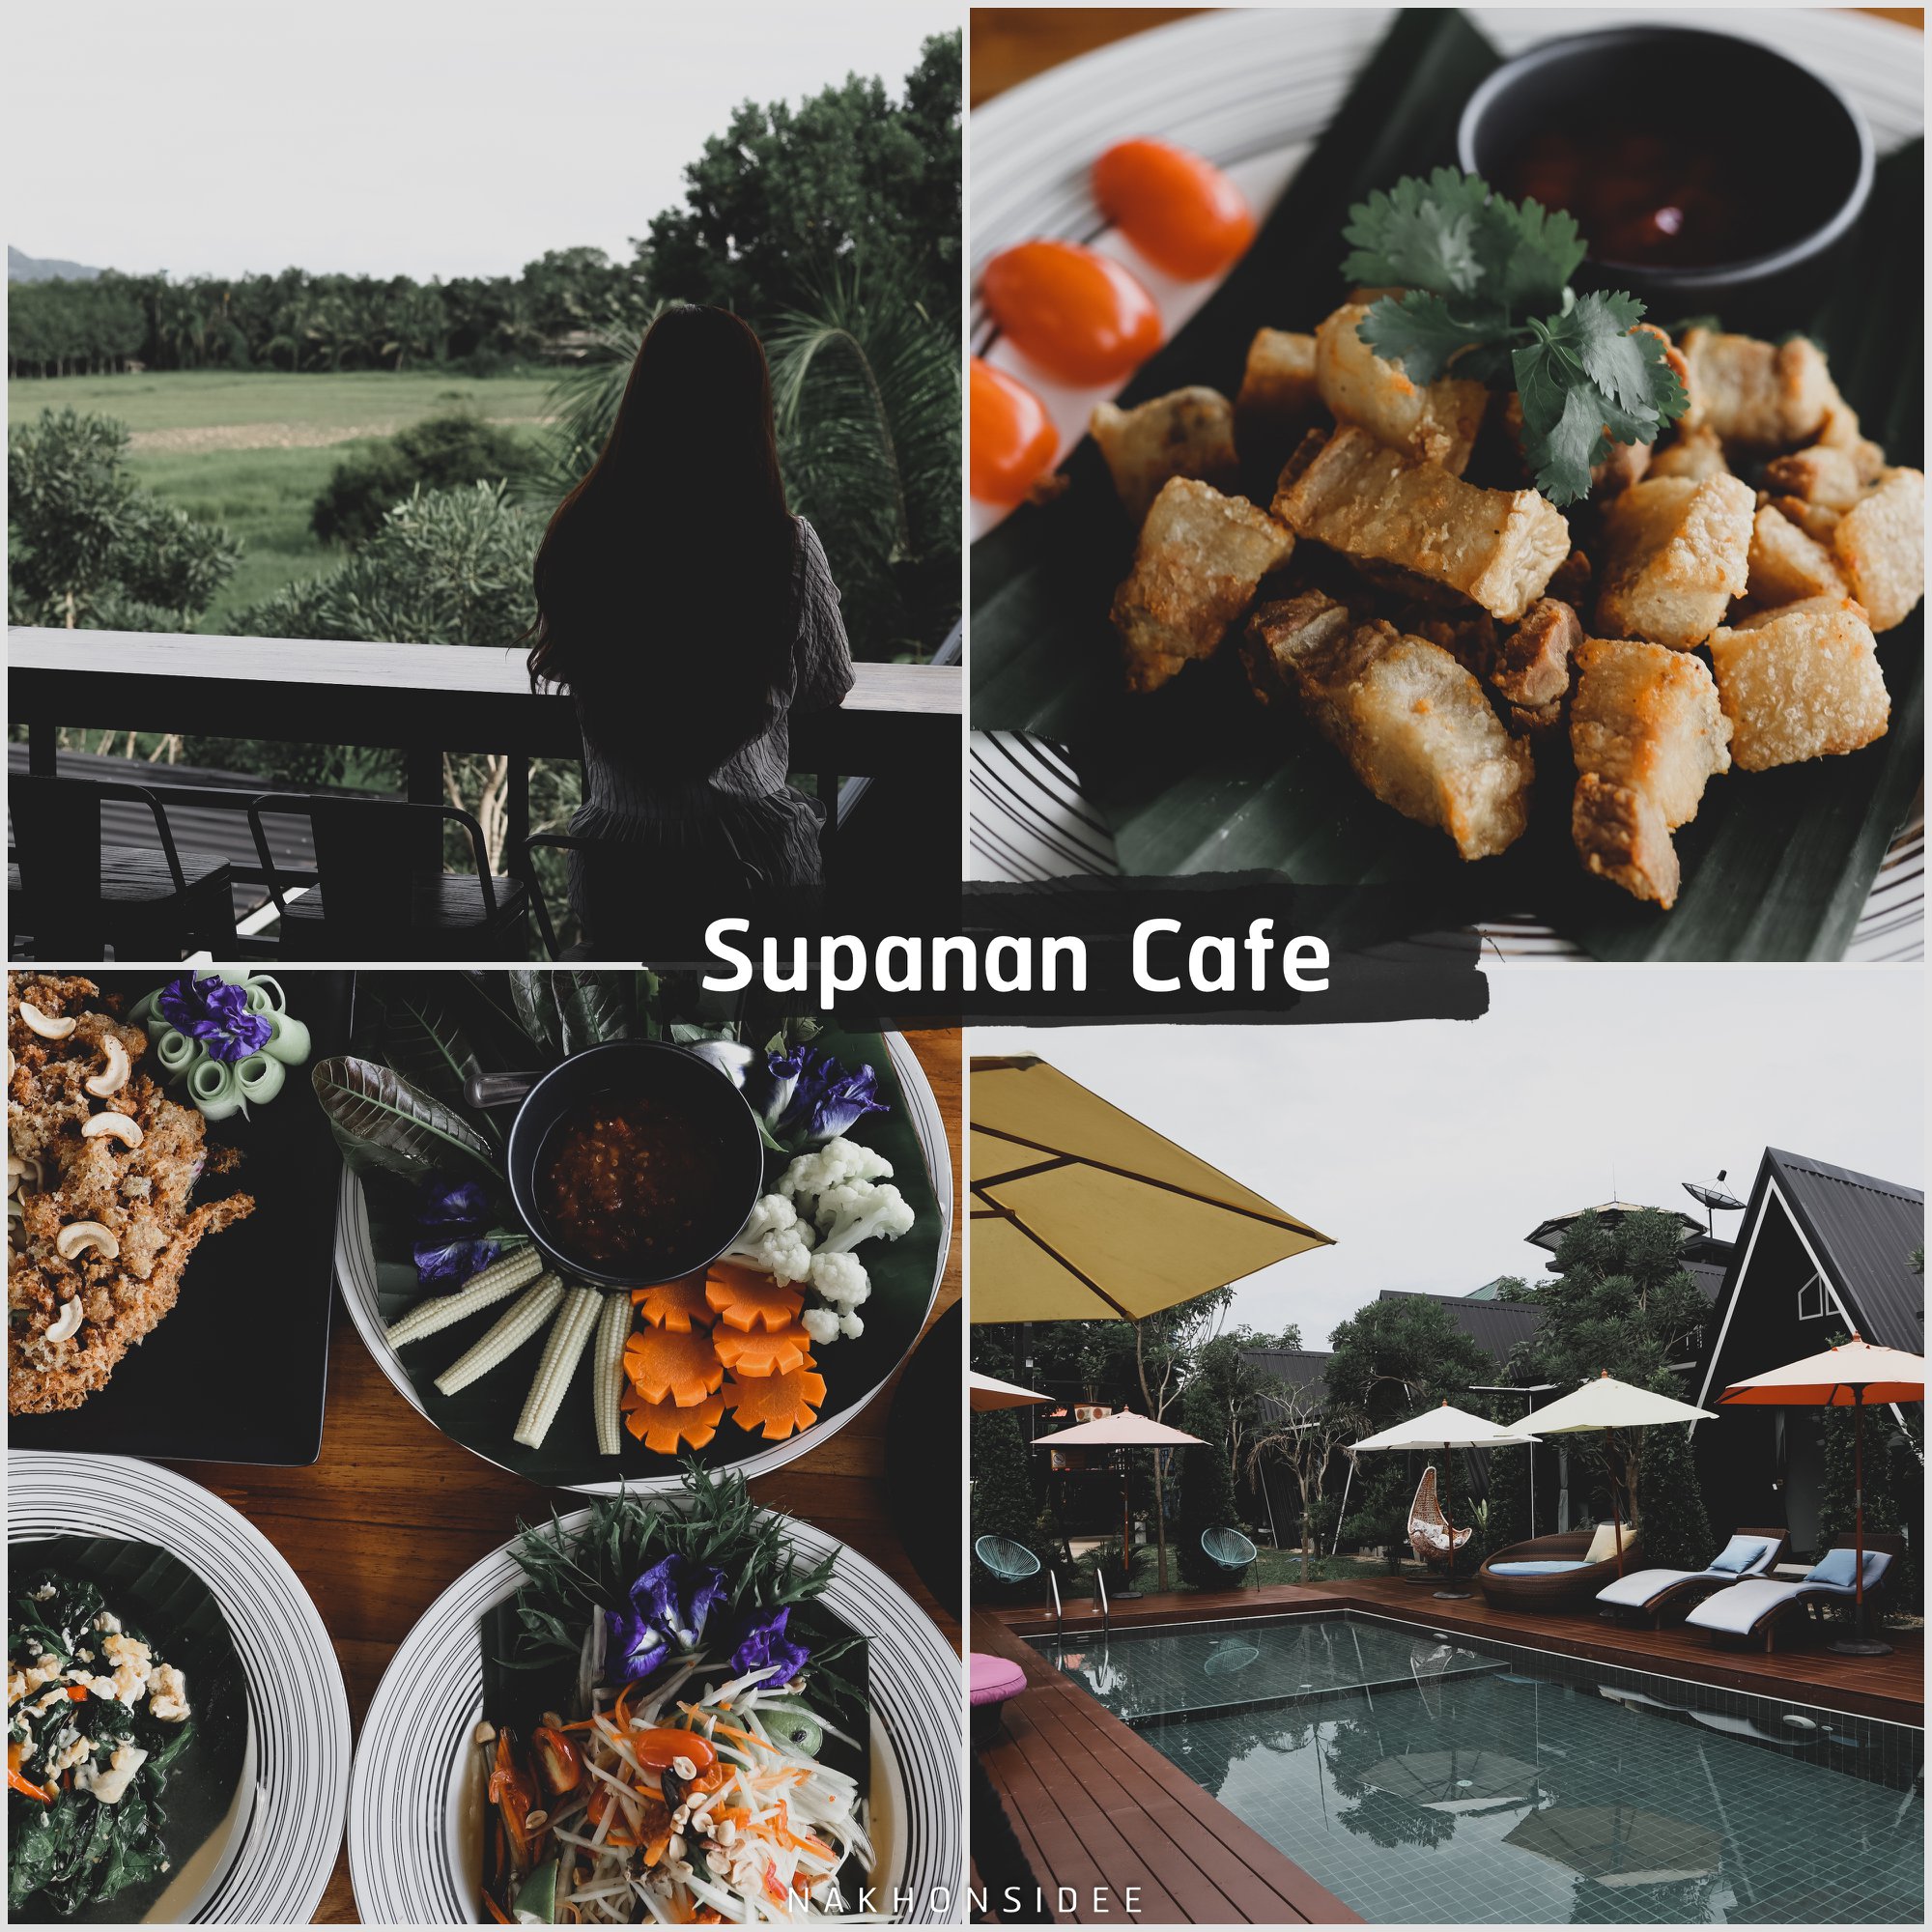  Supanan-Cafe-พัทลุง

คลิกที่นี่ คาเฟ่สวย,วิวหลักล้าน,นครศรีธรรมราช,รวมcafe,คาเฟ่,ร้านอาหาร,ร้านกาแฟ,ภูเขา